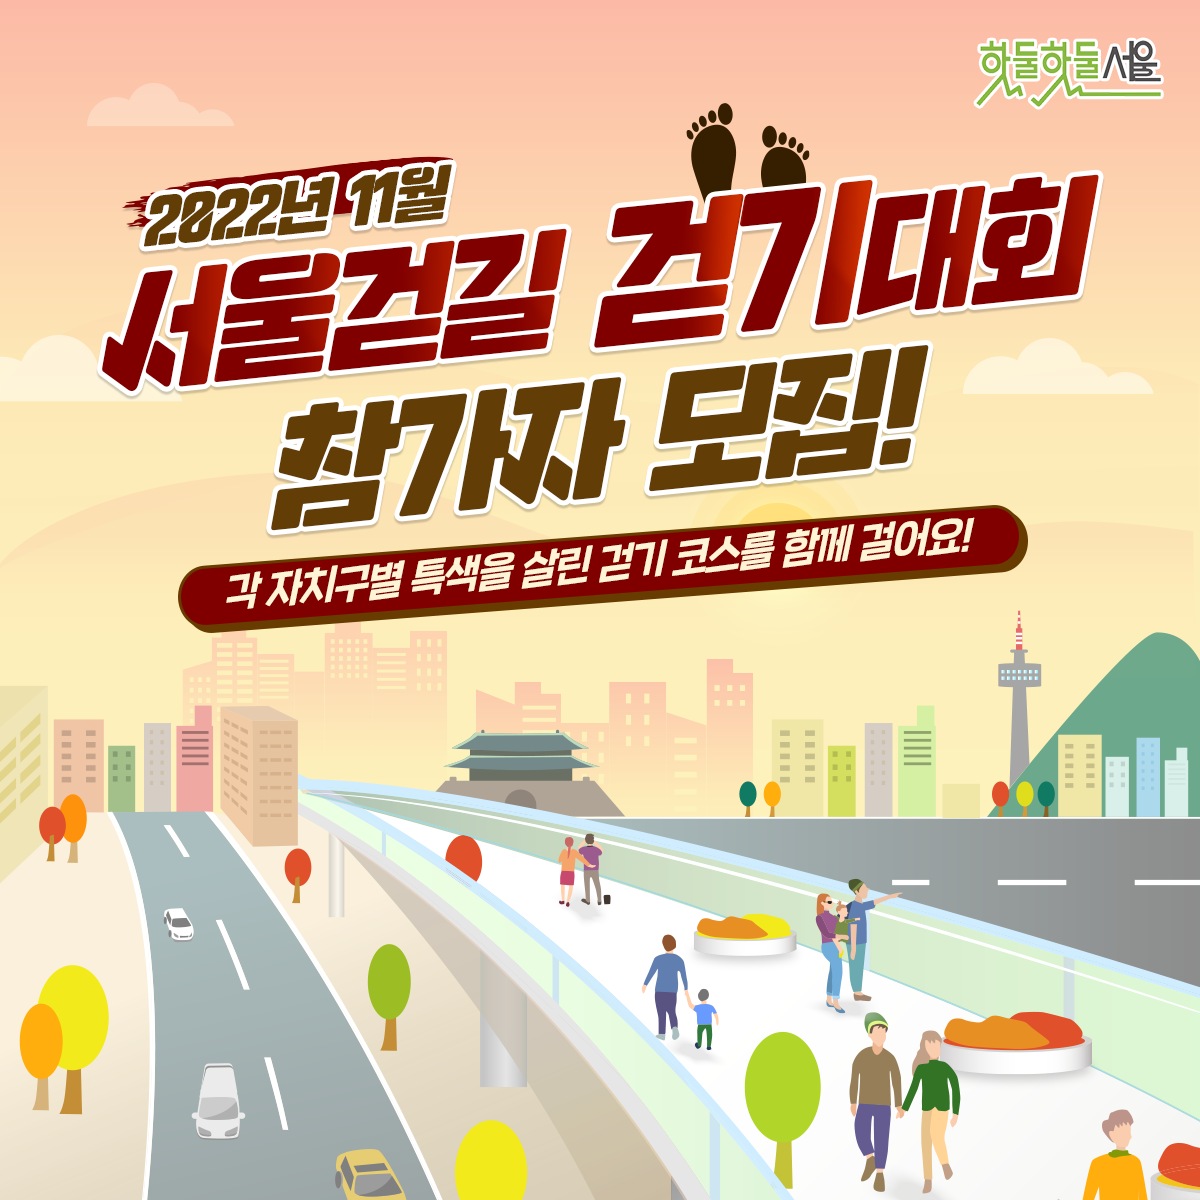 2022년 11월 서울걷길 걷기대회 참가자 모집! 각 자치구별 특색을 살린 걷기 코스를 함께 걸어요!